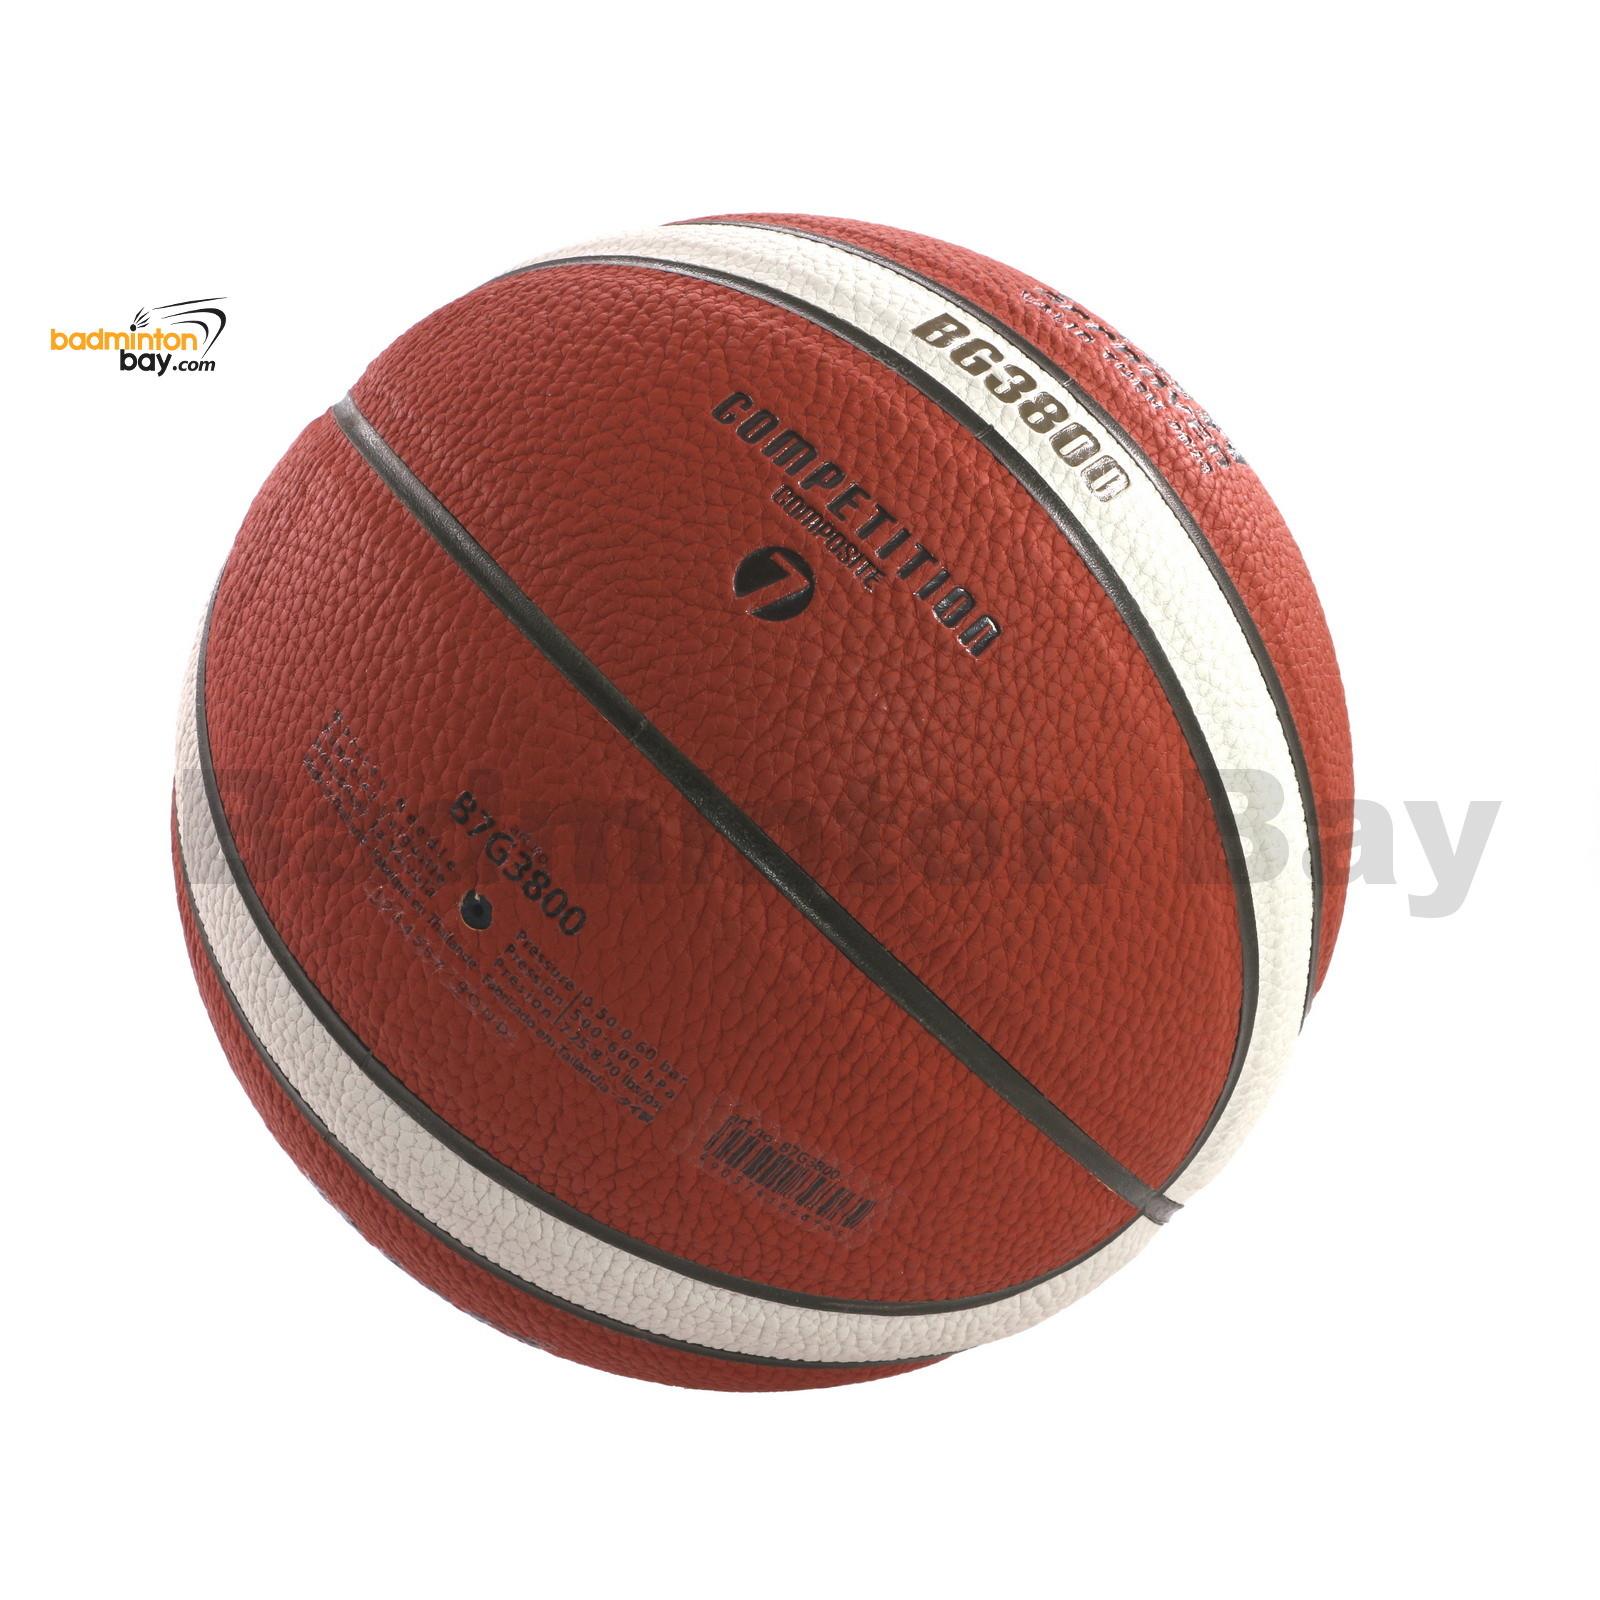 Größe 7 MOLTEN BGG7X Basketball GG7X FIBA Approved DBB geprüft 